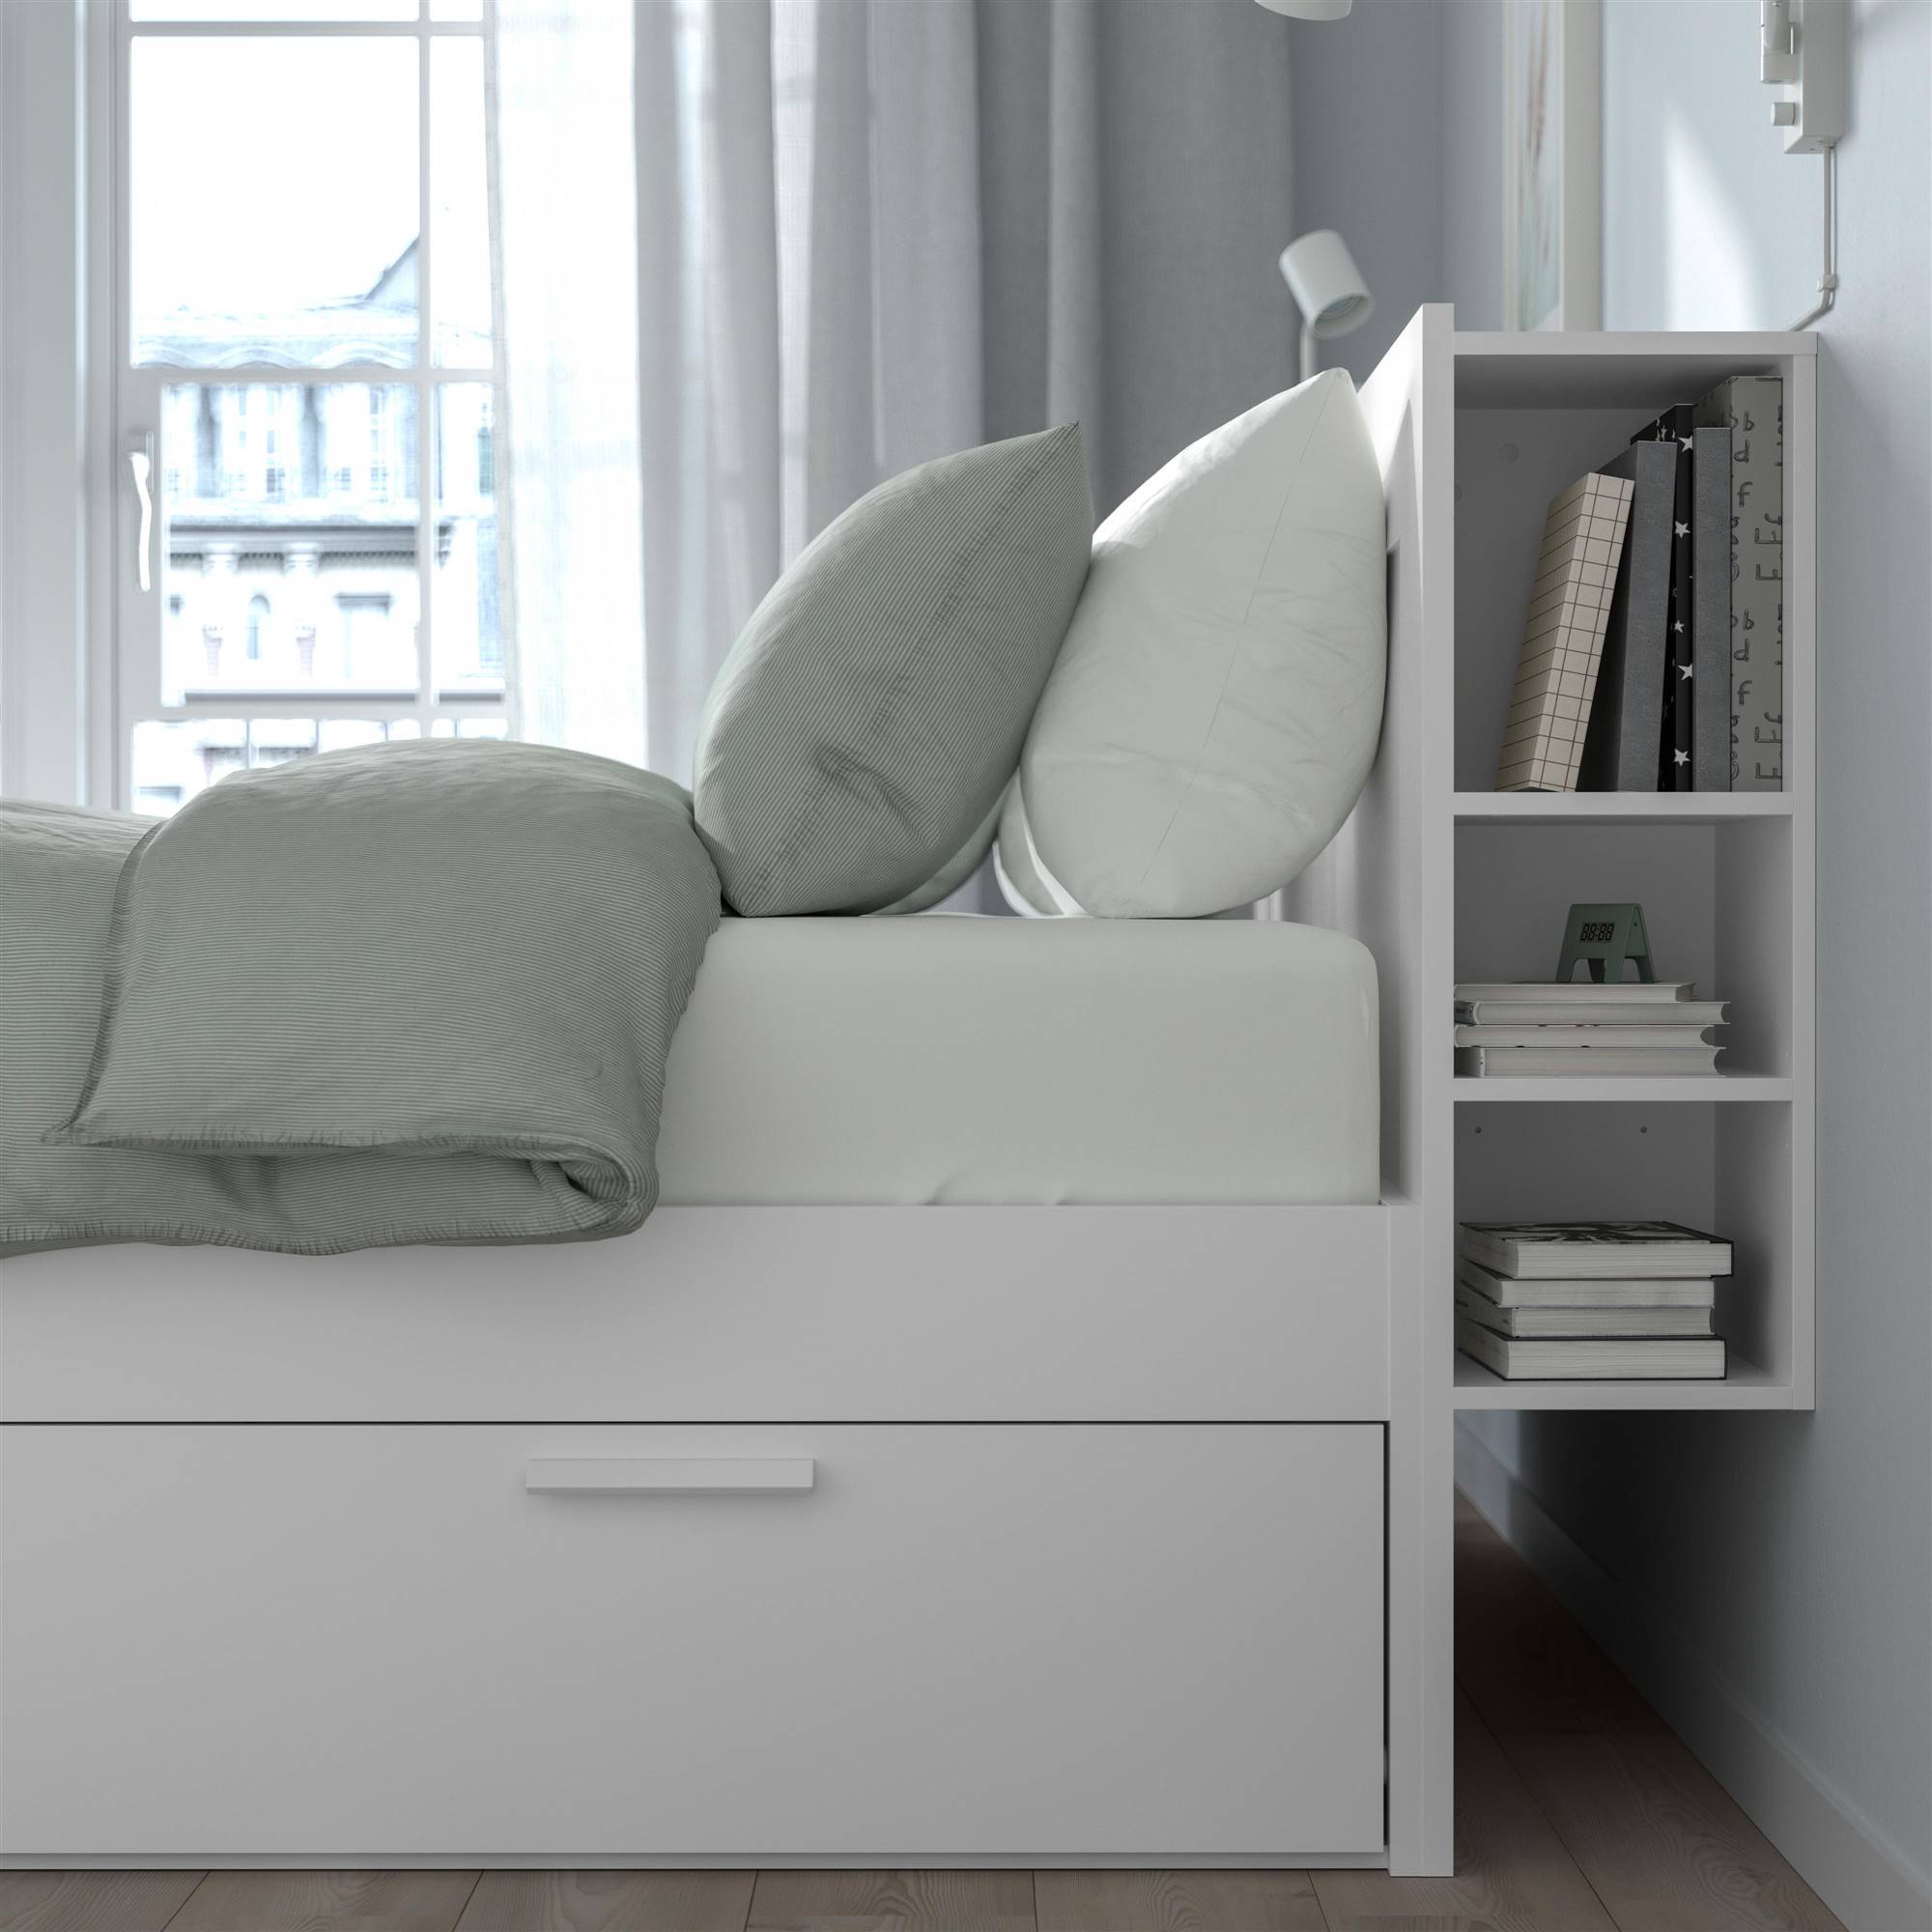 Cardenal Obligatorio coger un resfriado Cabeceros de IKEA 2022: modelos ideales para tu dormitorio